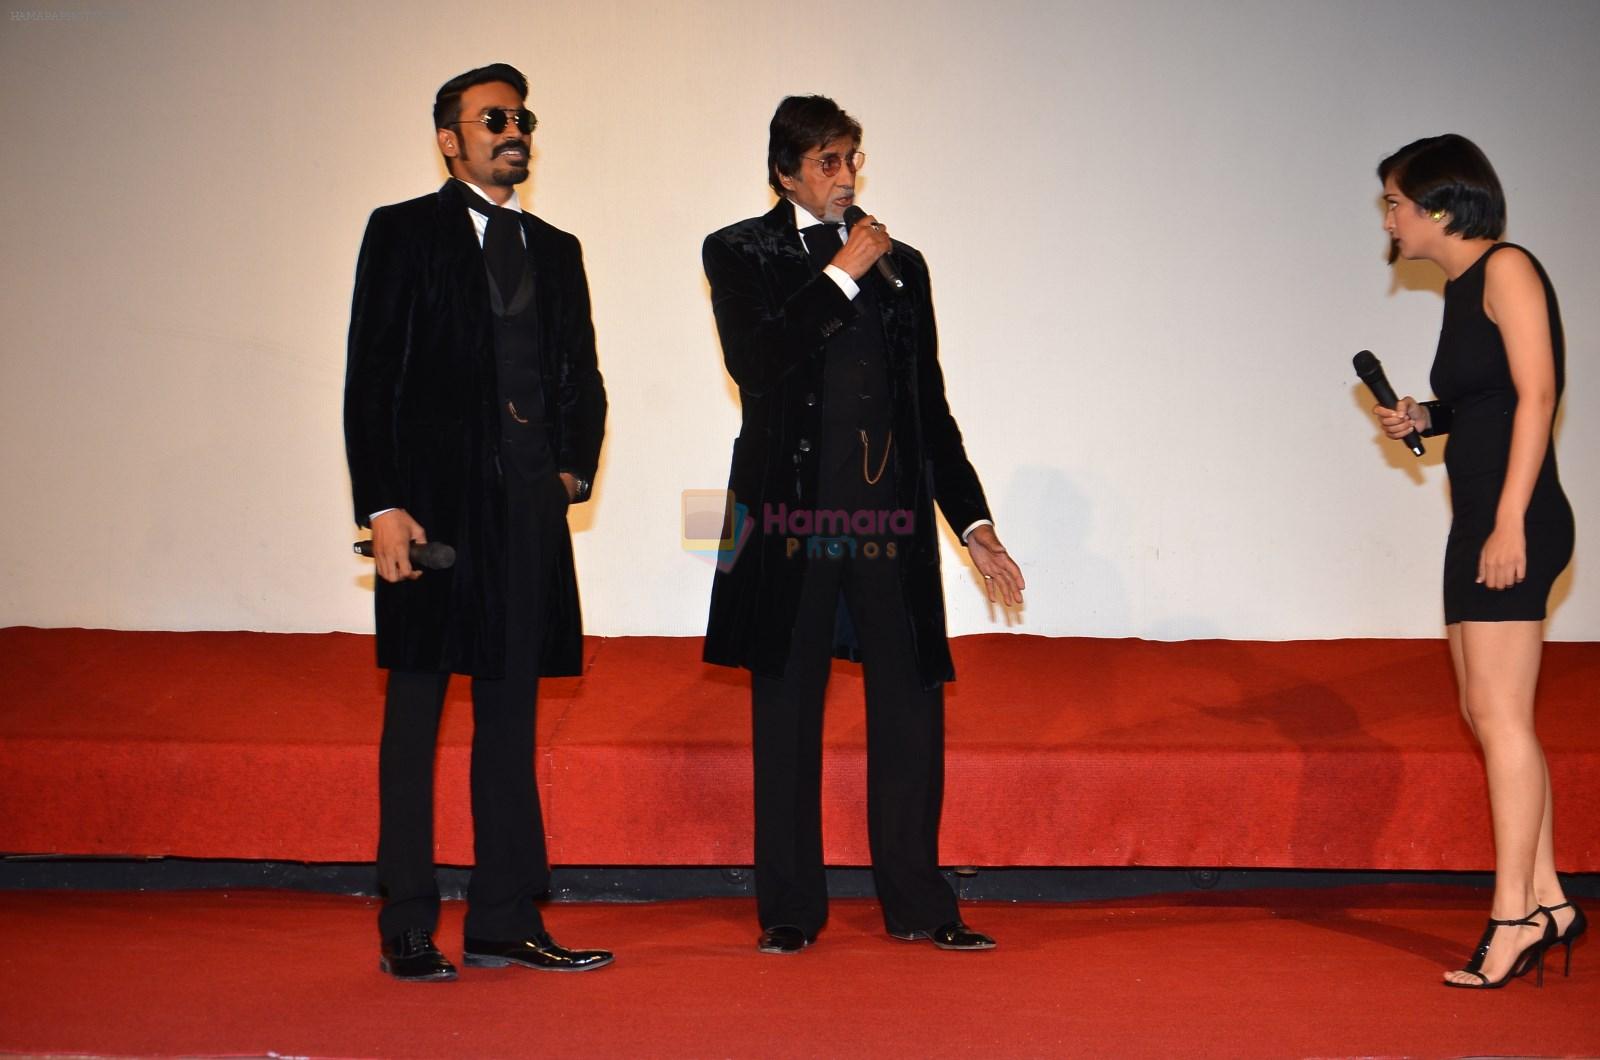 Dhanush, Akshara Haasan, Amitabh Bachchan at Shamitabh trailor launch in Mumbai on 6th Jan 2015